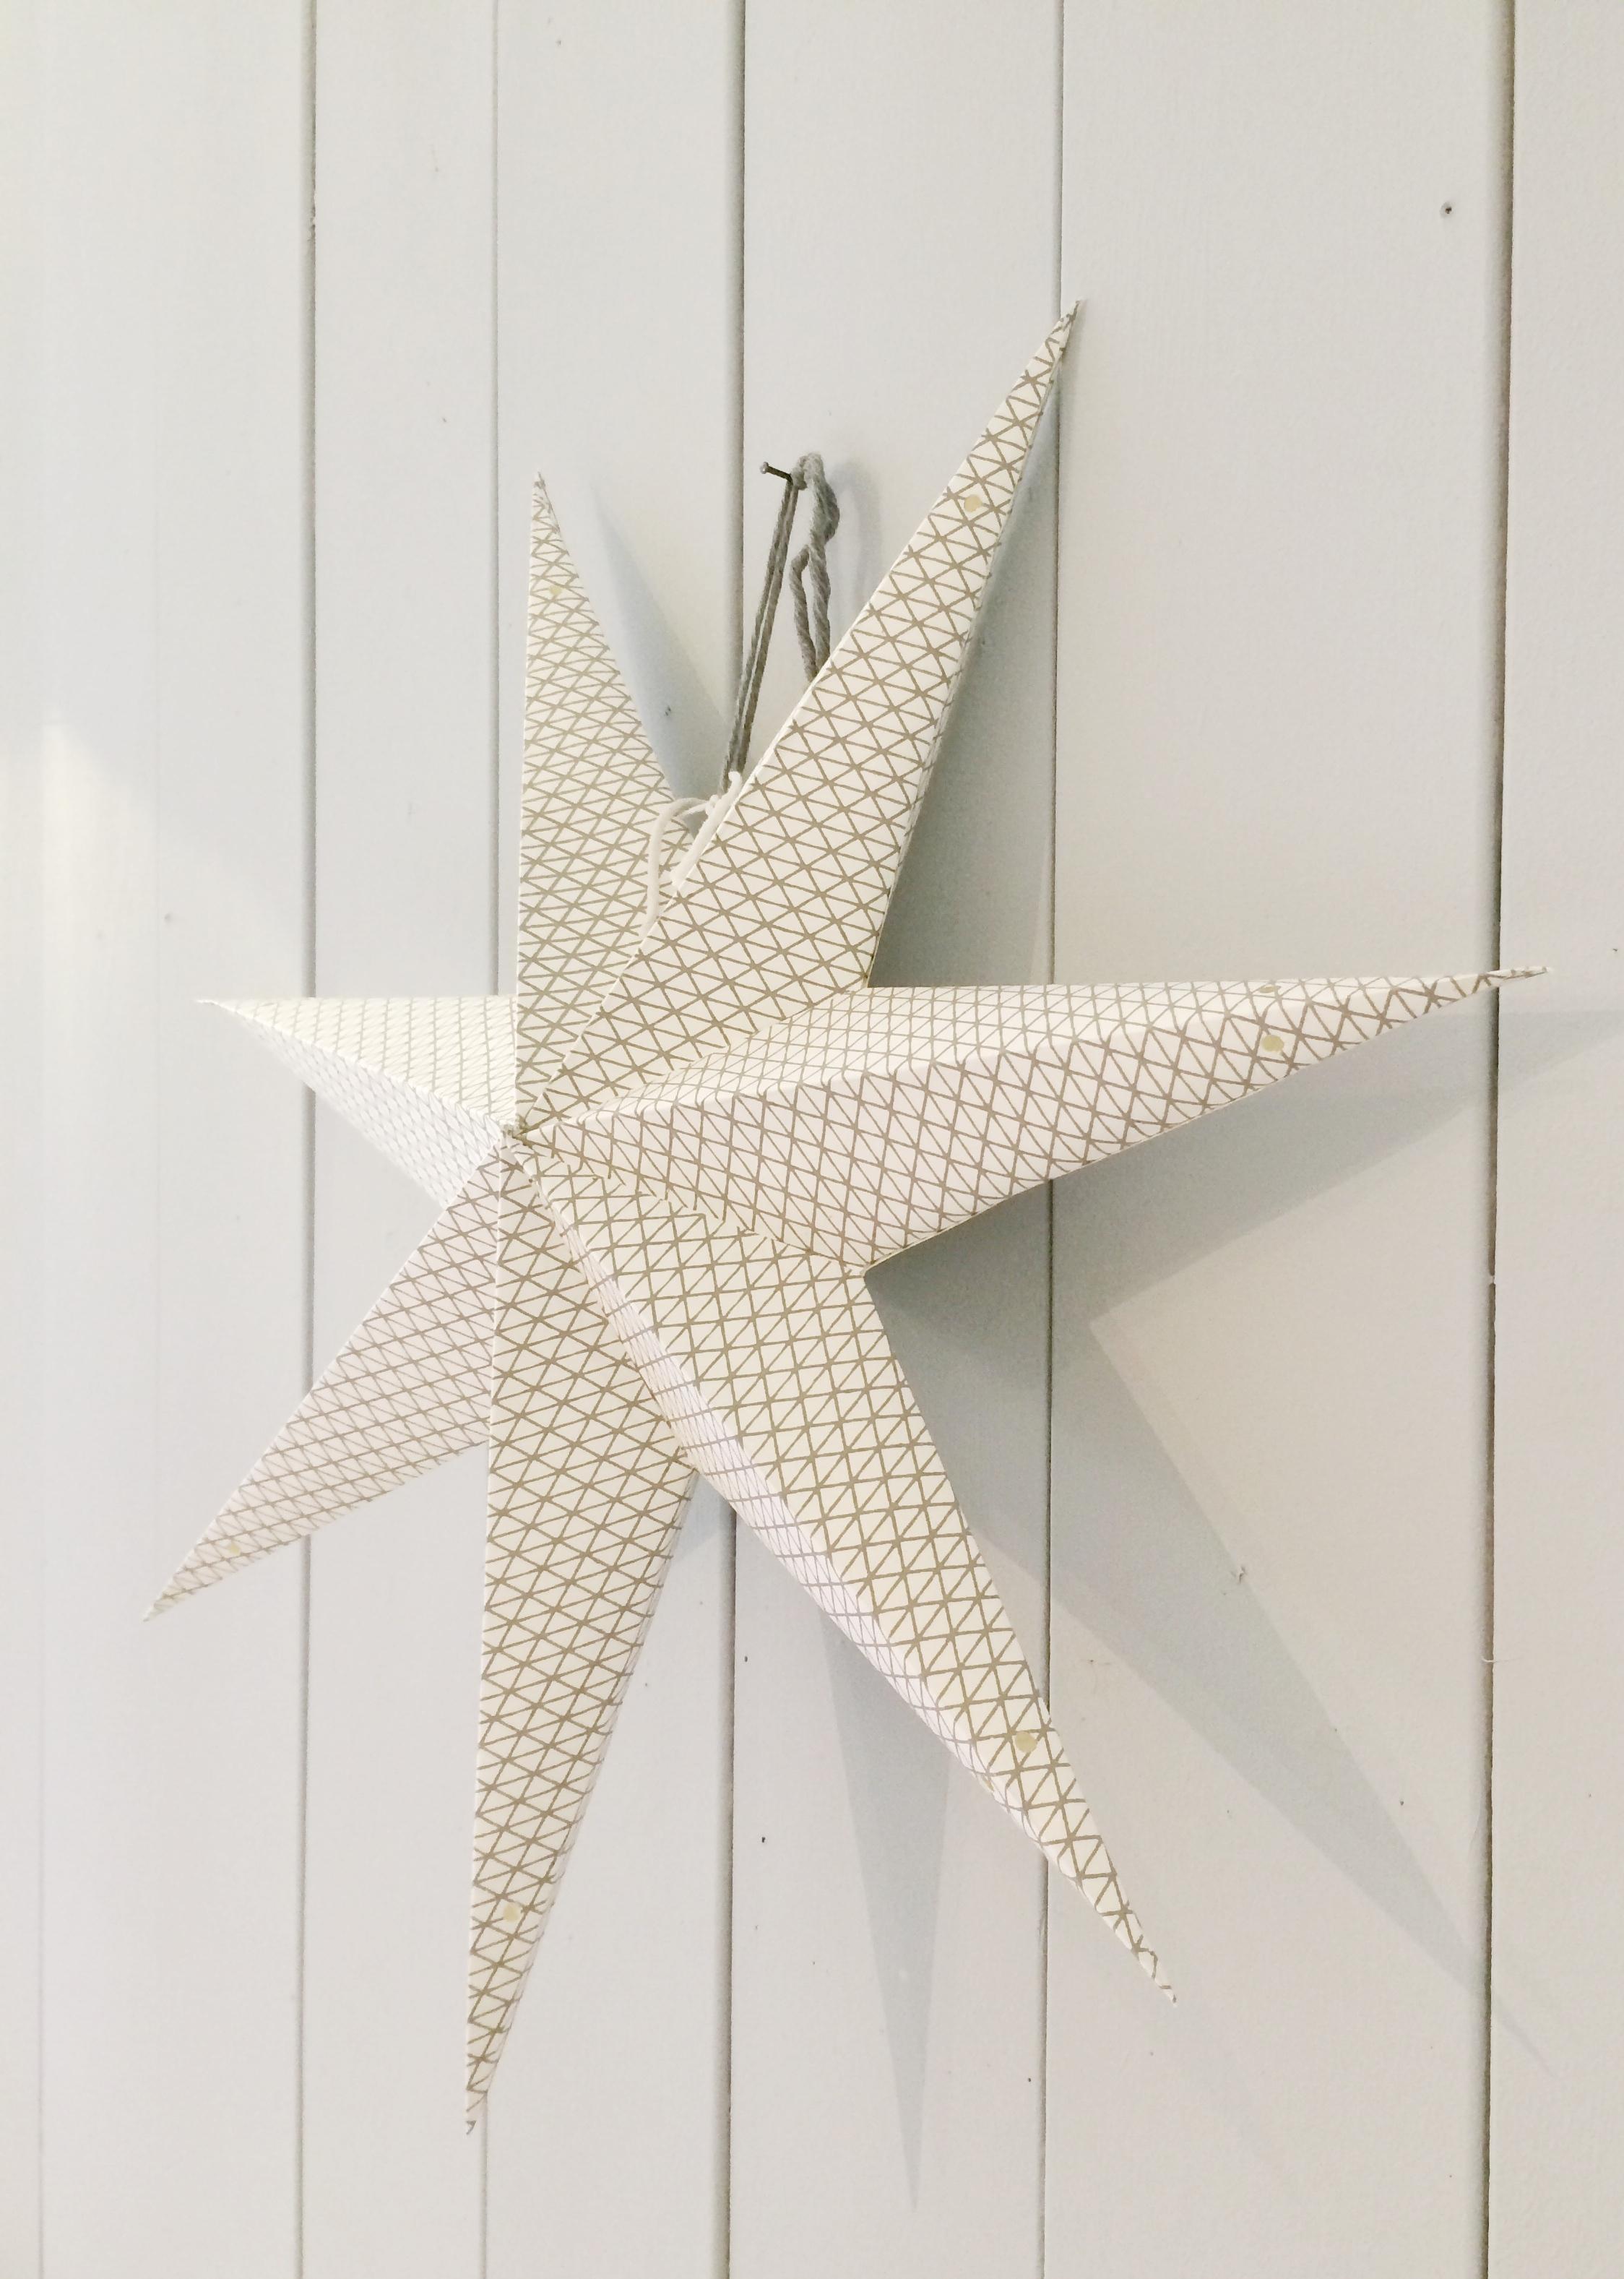 Papierstern mit geometrischem Muster #holzwand #weihnachtsdeko ©Andrea_Fischer